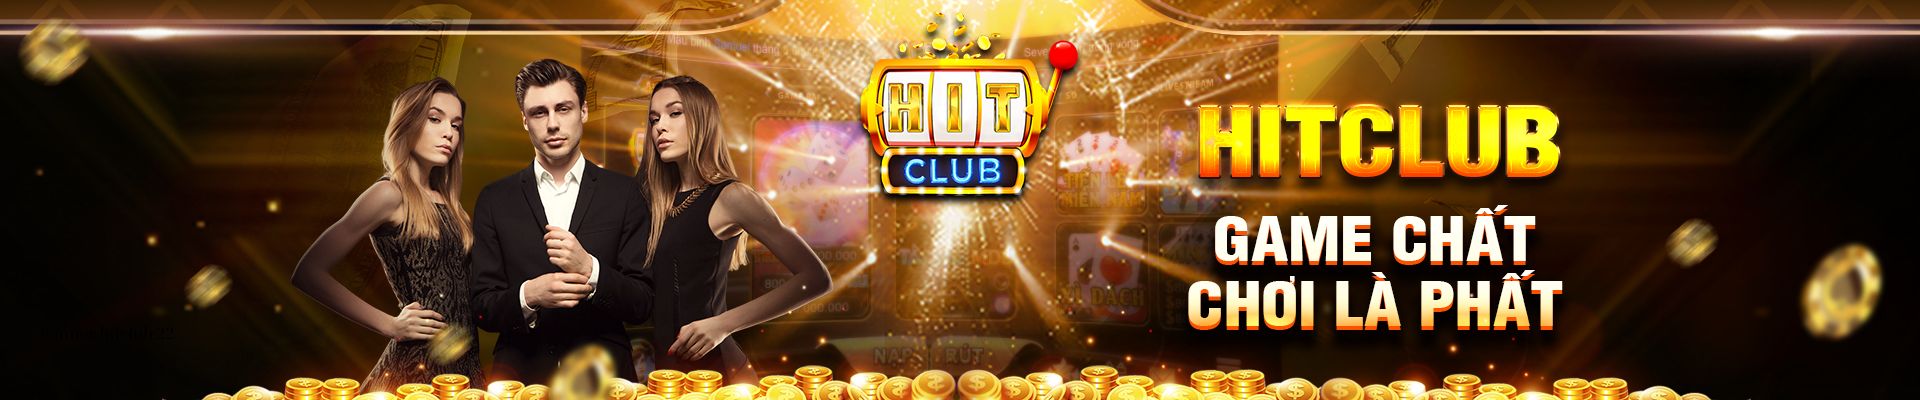 hitclub - cổng game đổi thưởng đẳng cấp